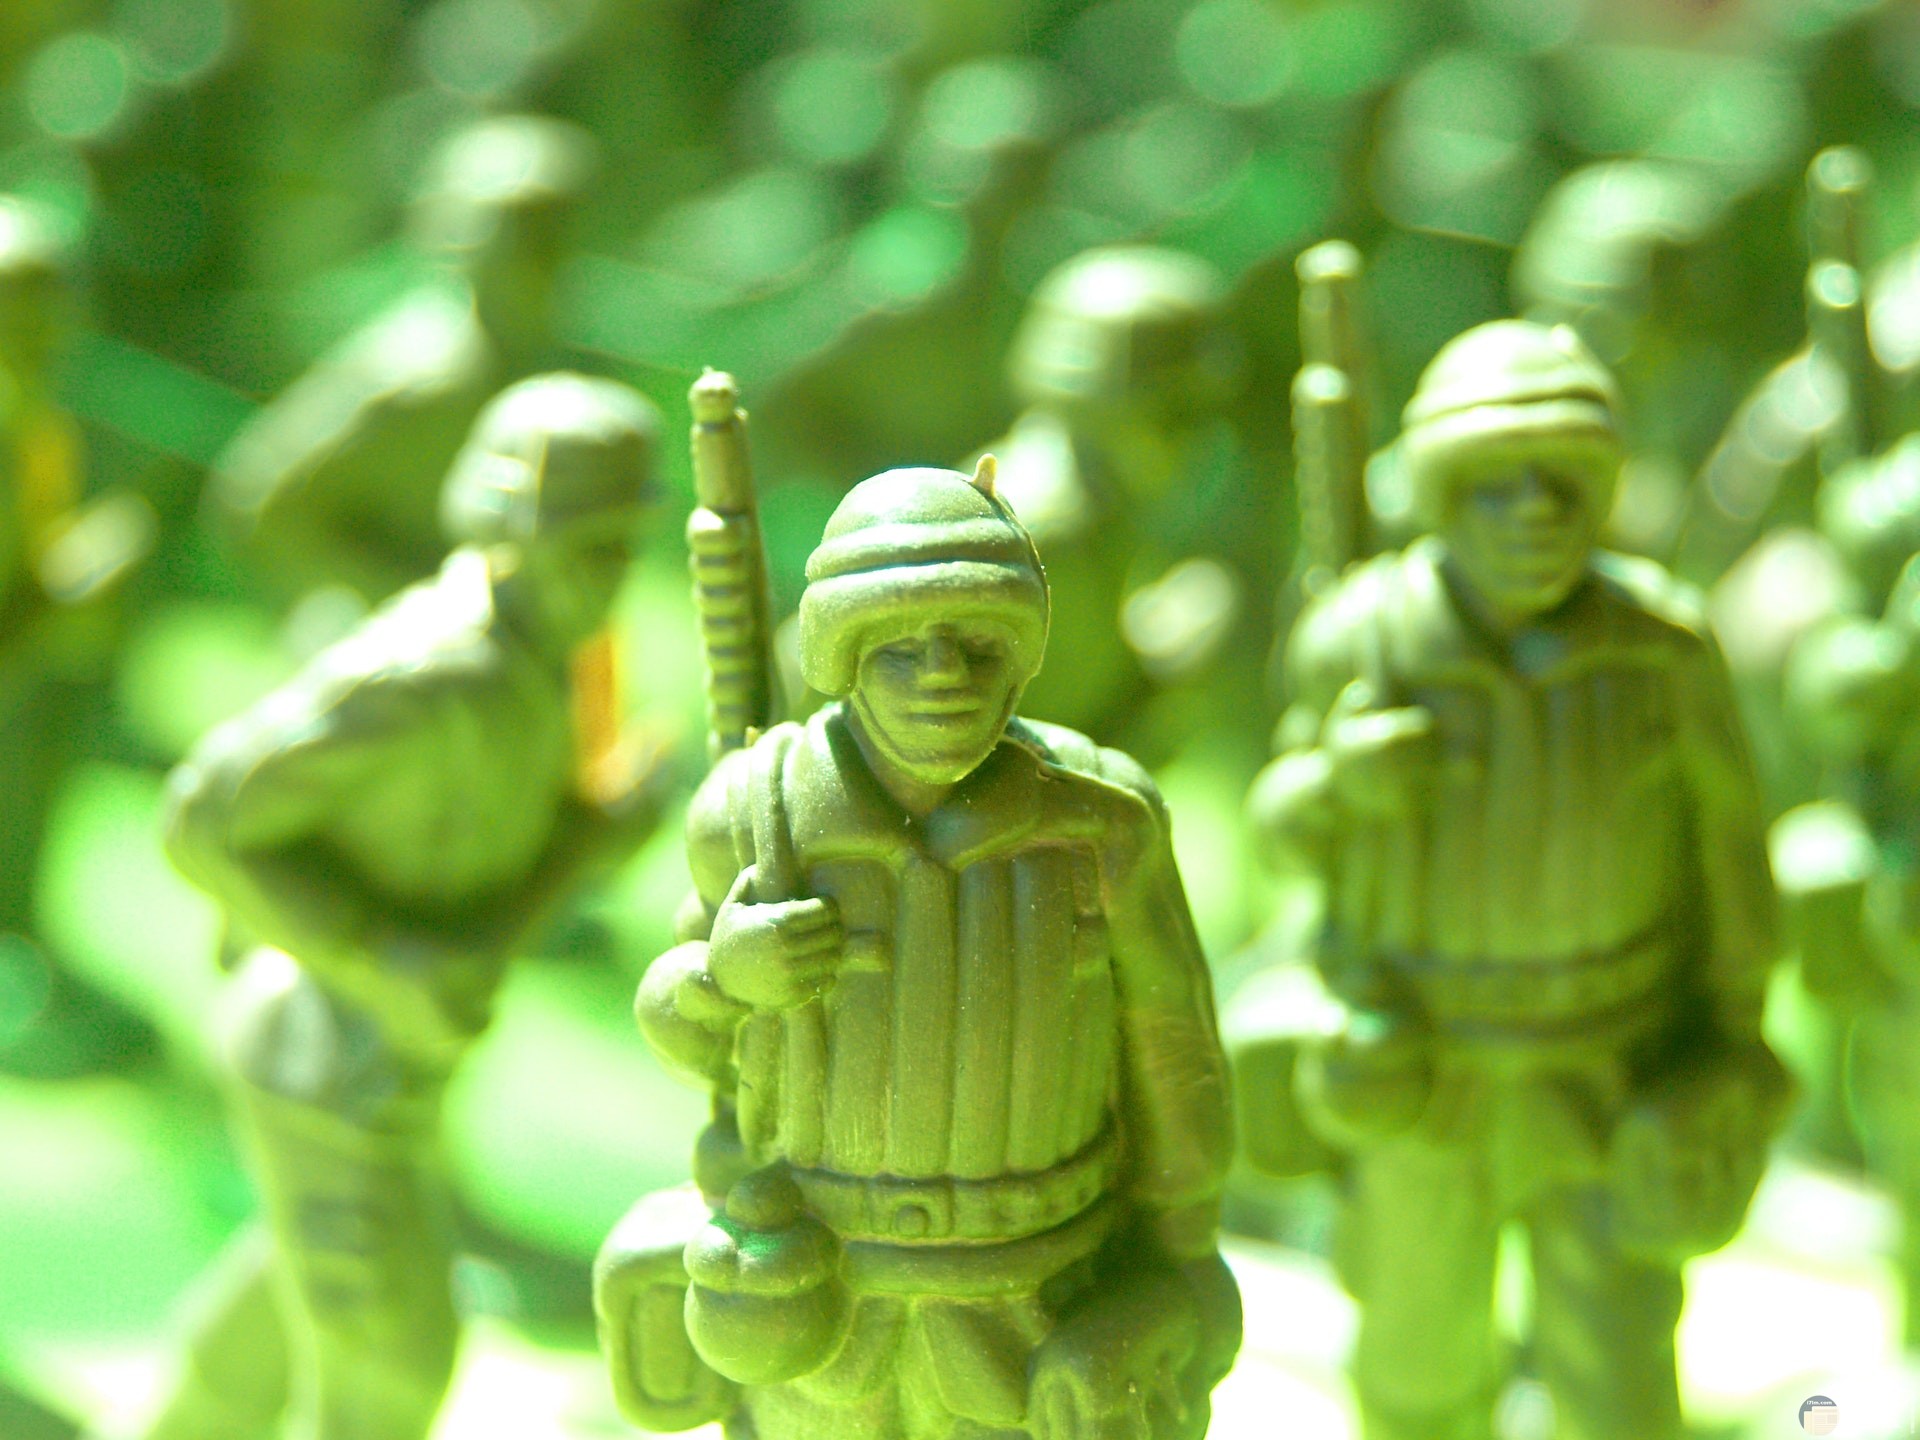 صورة مميزة لألعاب أطفال ولاد عن لعب جنود باللون الأخضر في حرب وخلفهم جنود أخرين